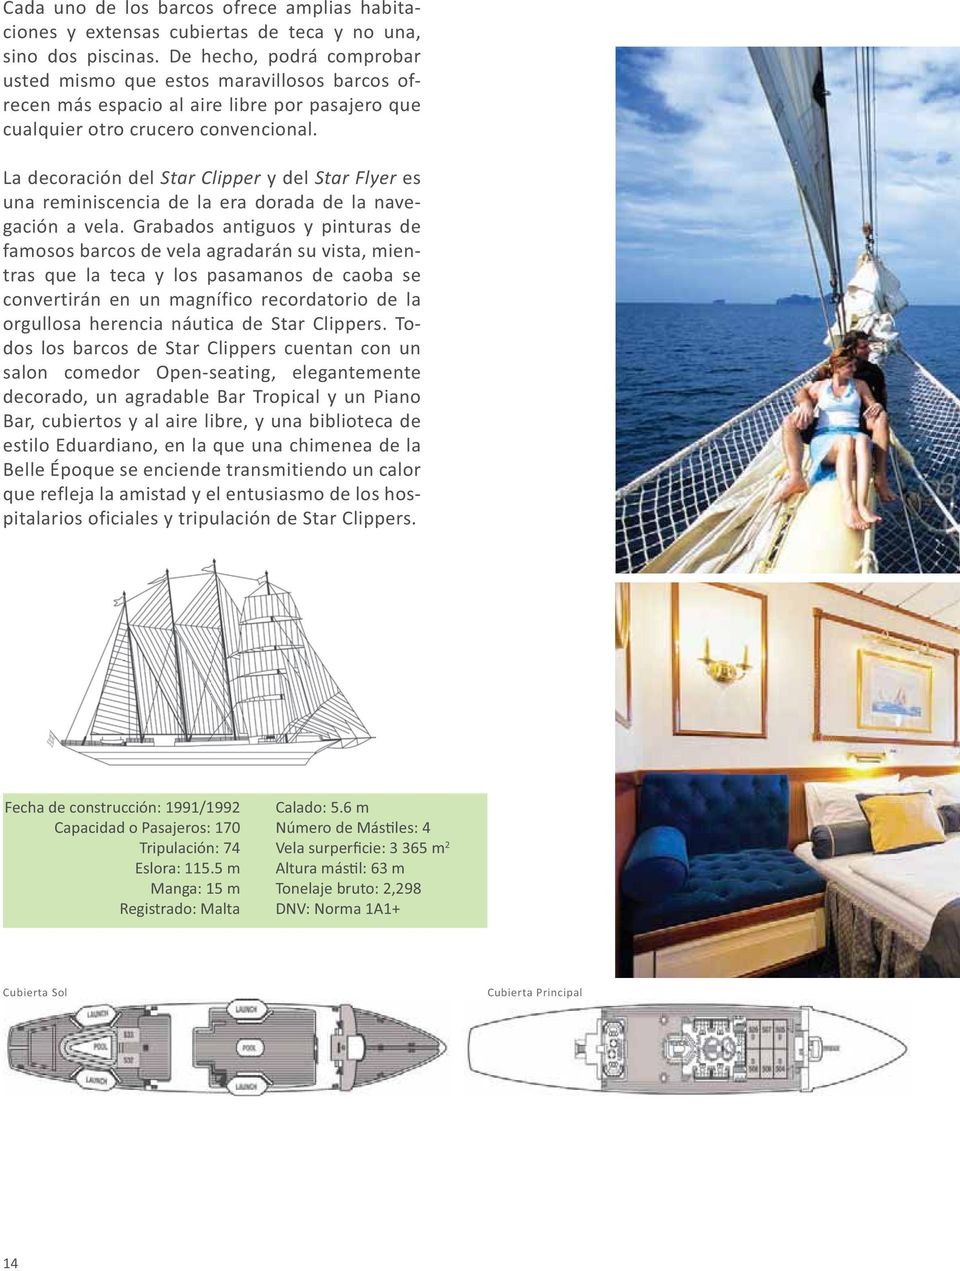 La decoración del Star Clipper y del Star Flyer es una reminiscencia de la era dorada de la navegación a vela.